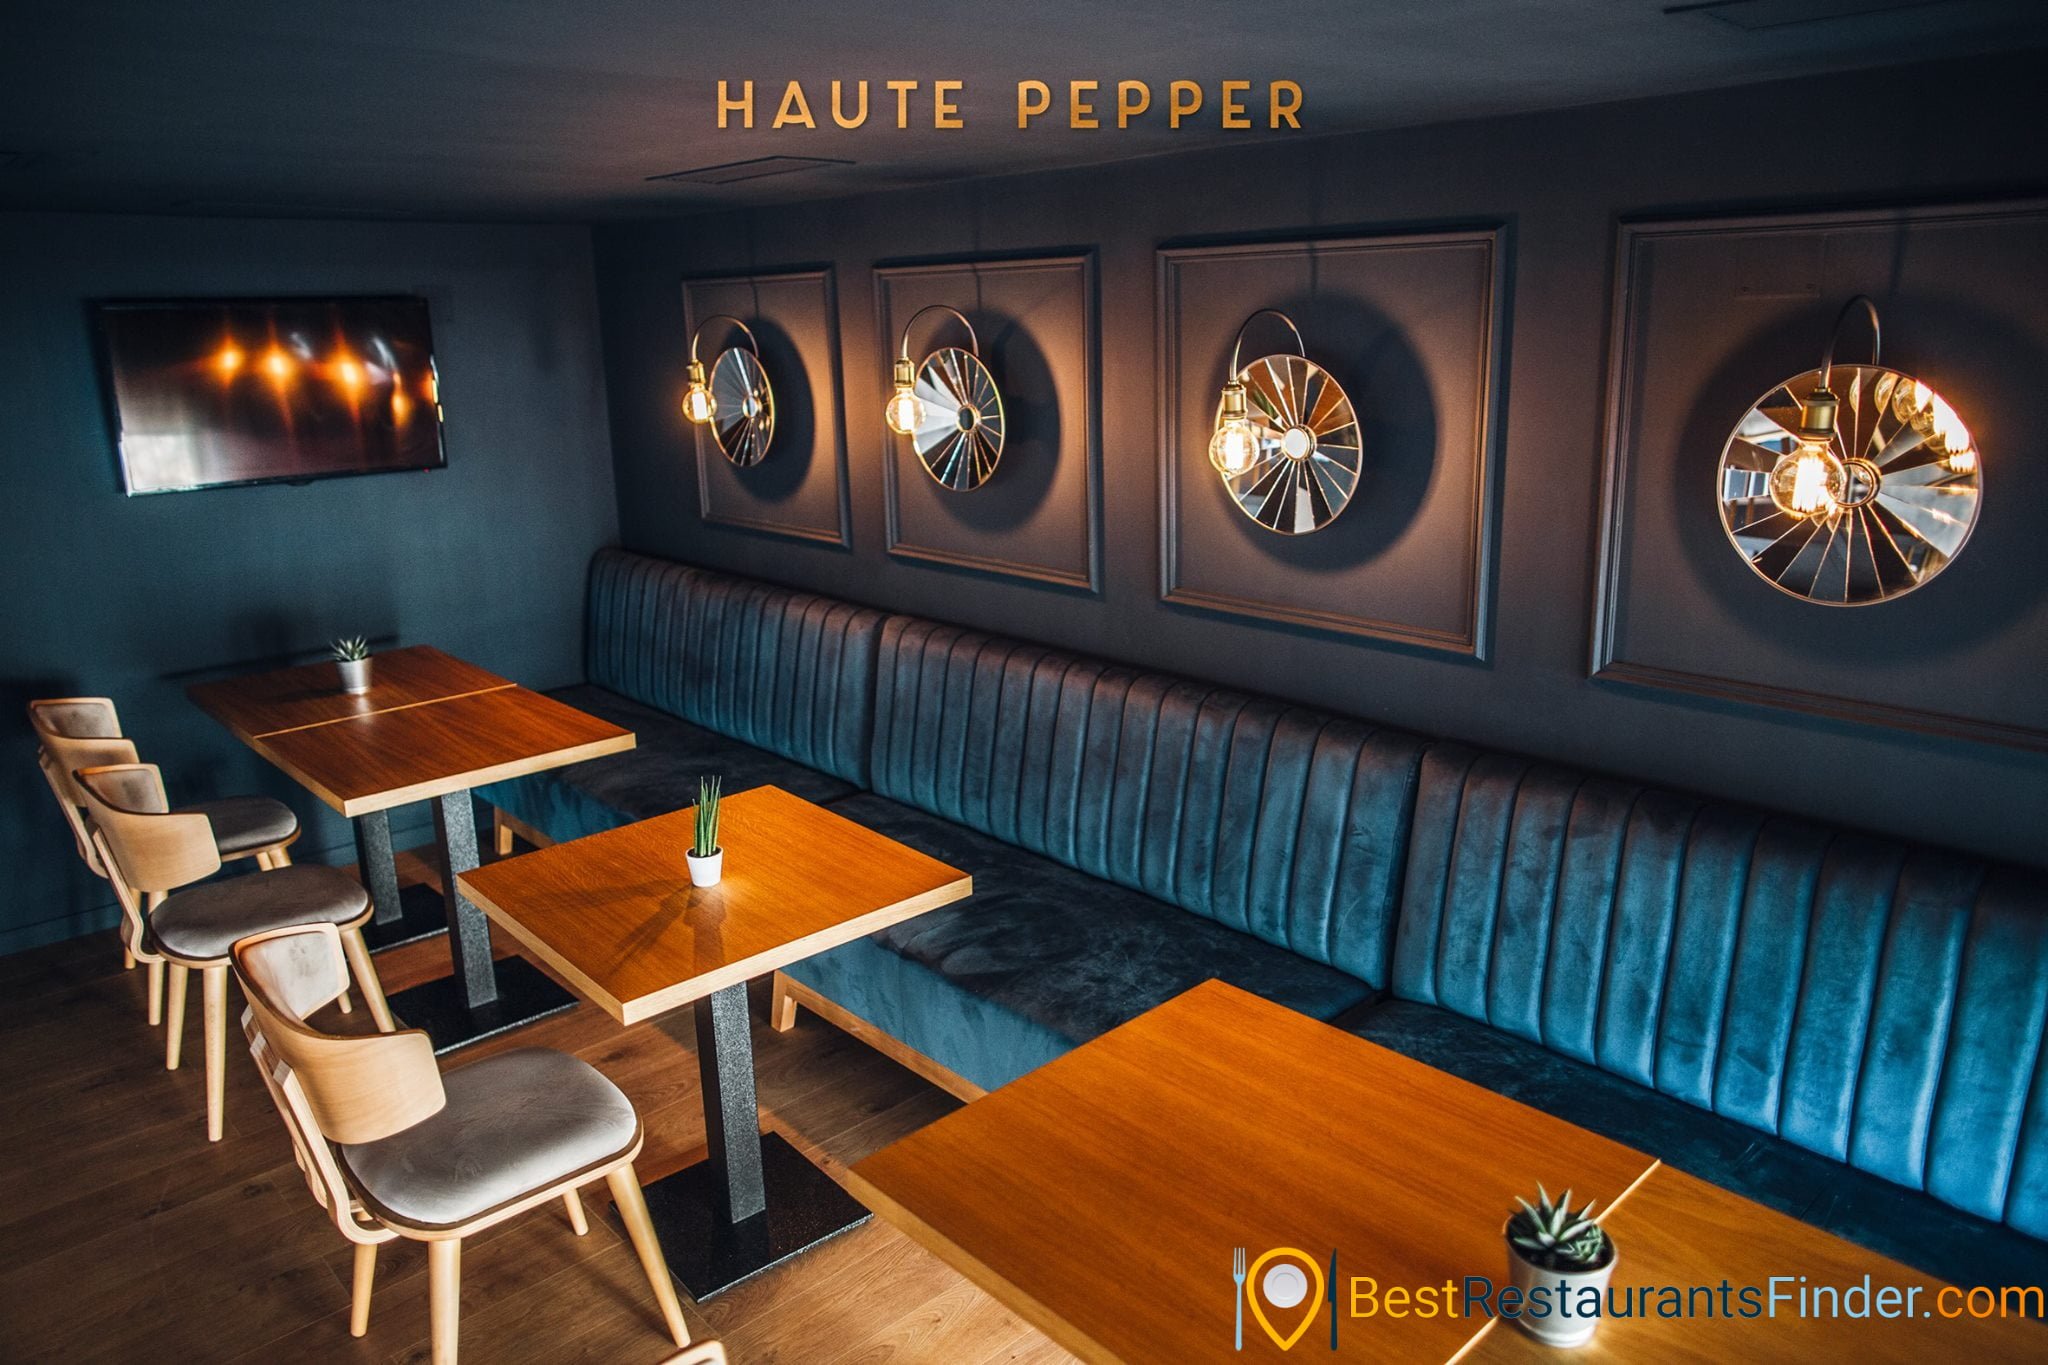 Restaurant Haute Pepper